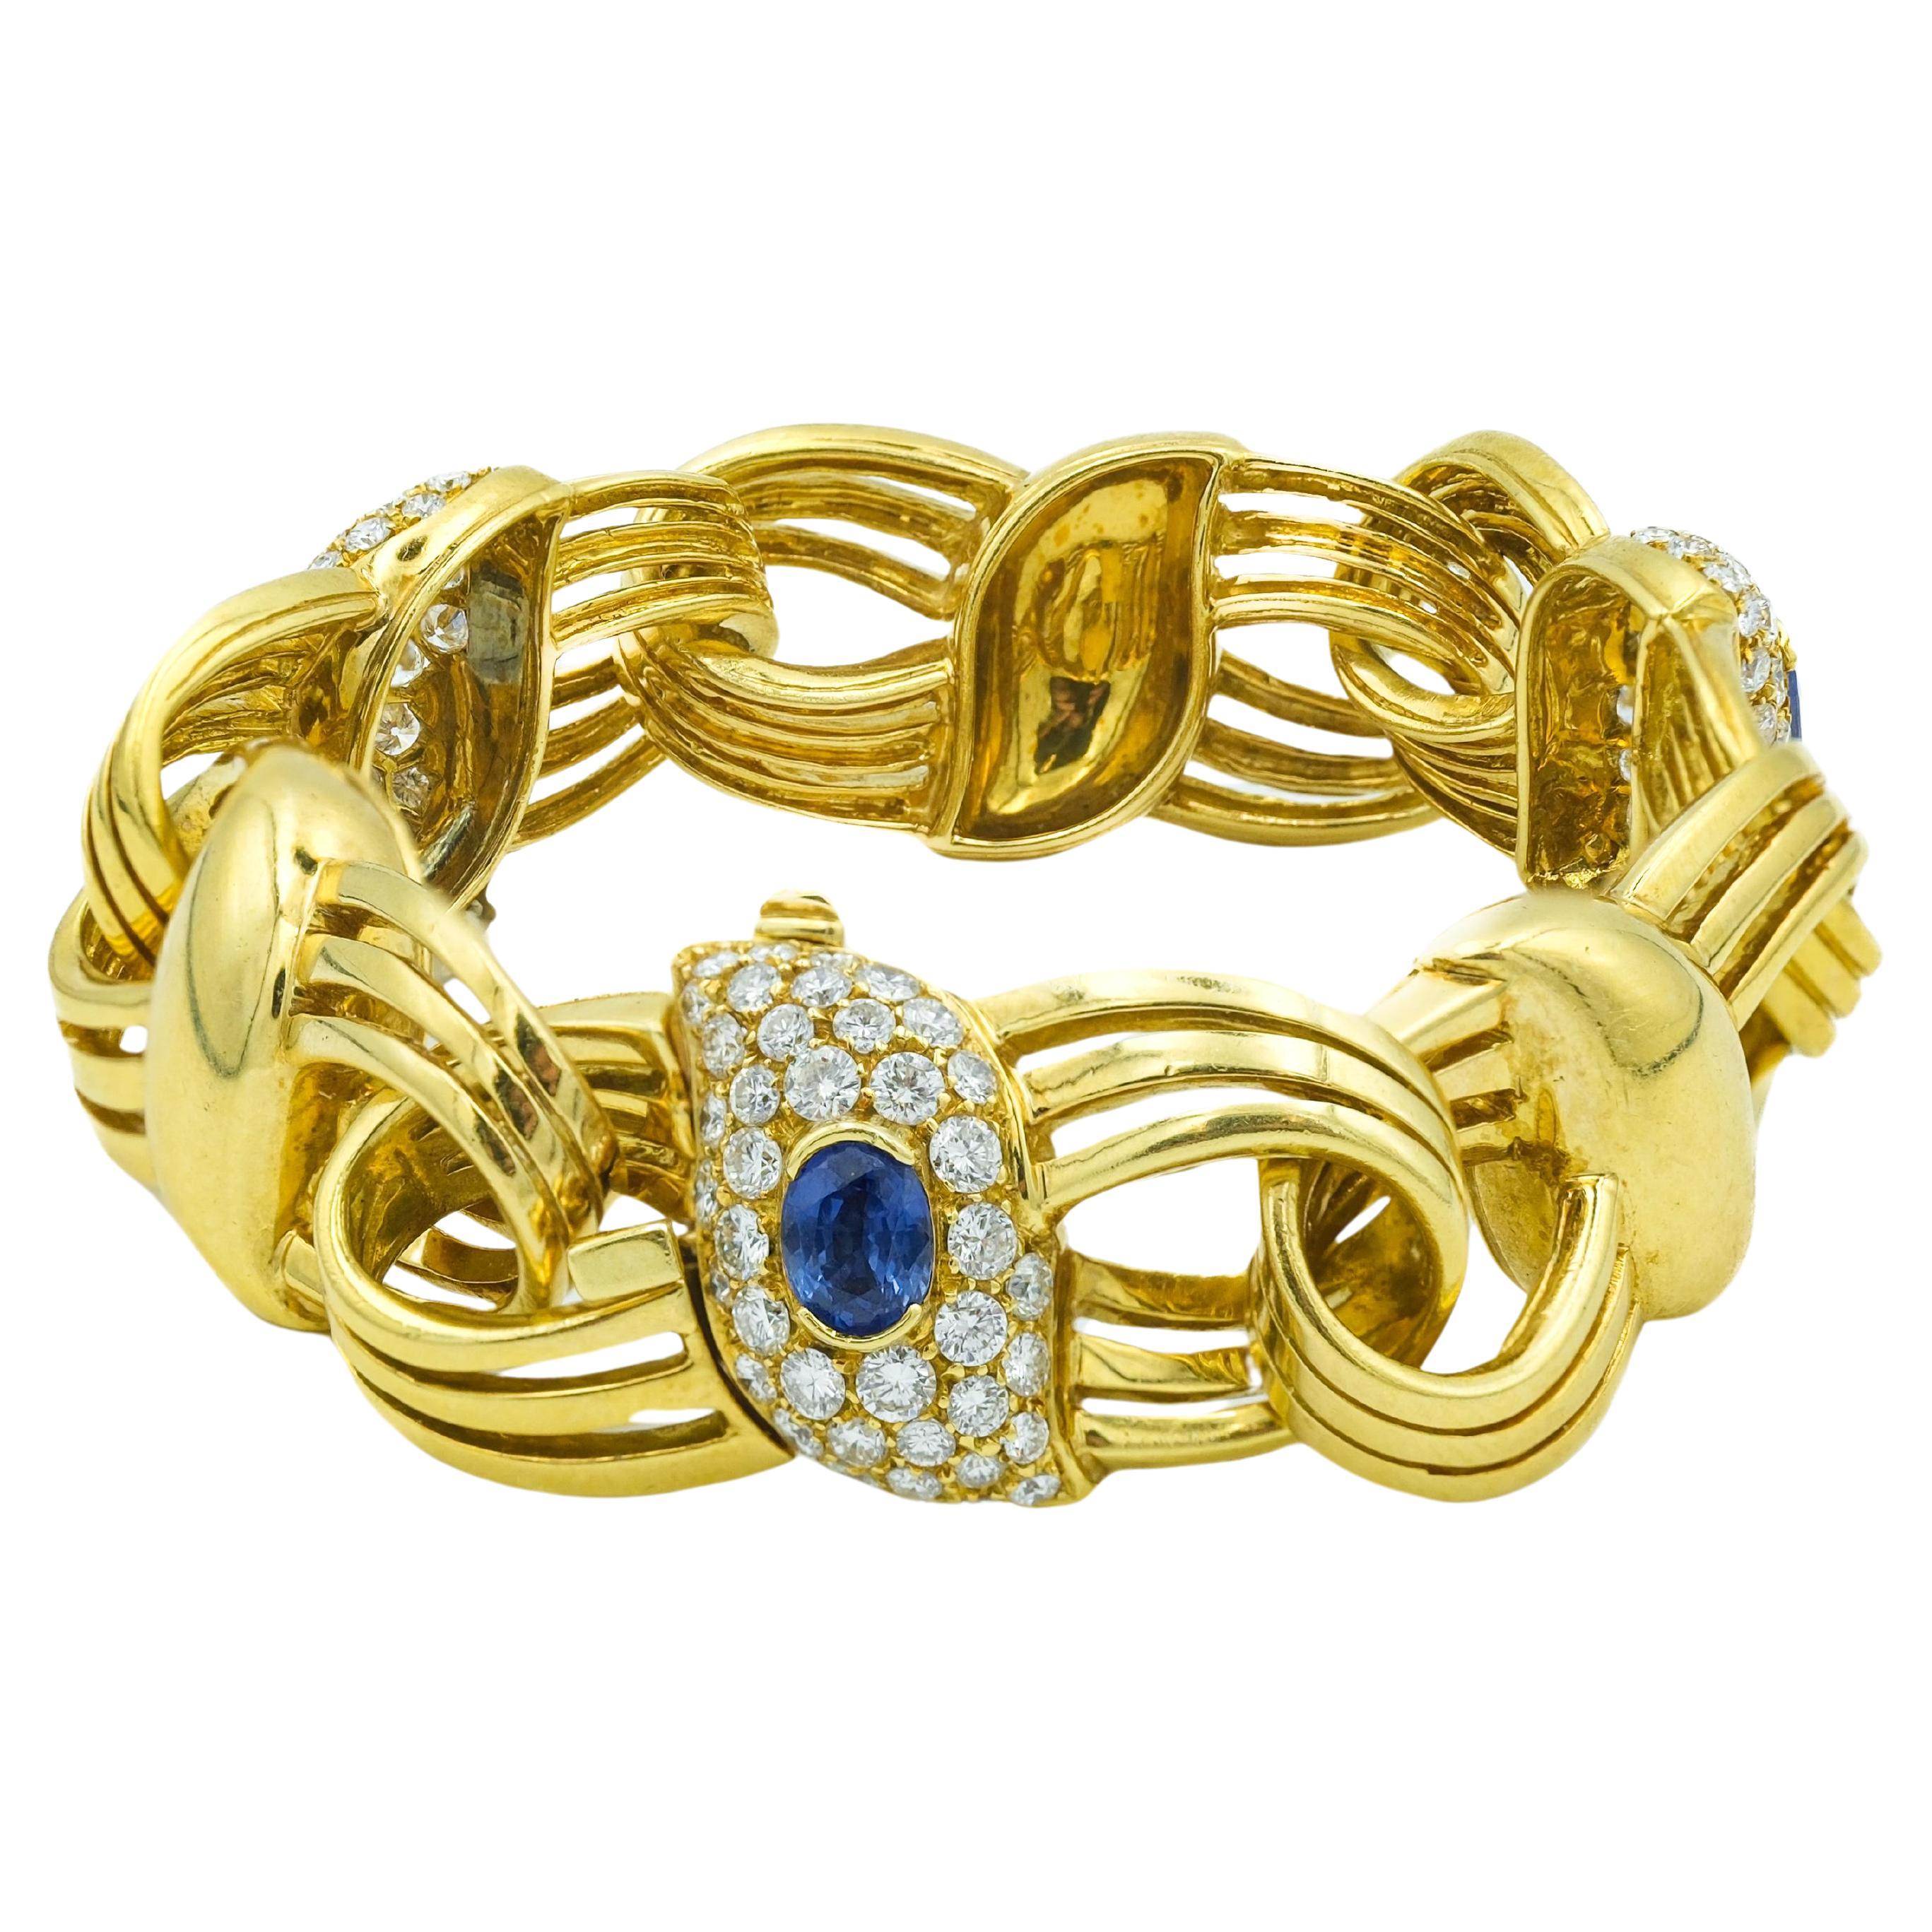 Armband aus 18 Karat Gelbgold mit blauen Saphiren und Diamanten